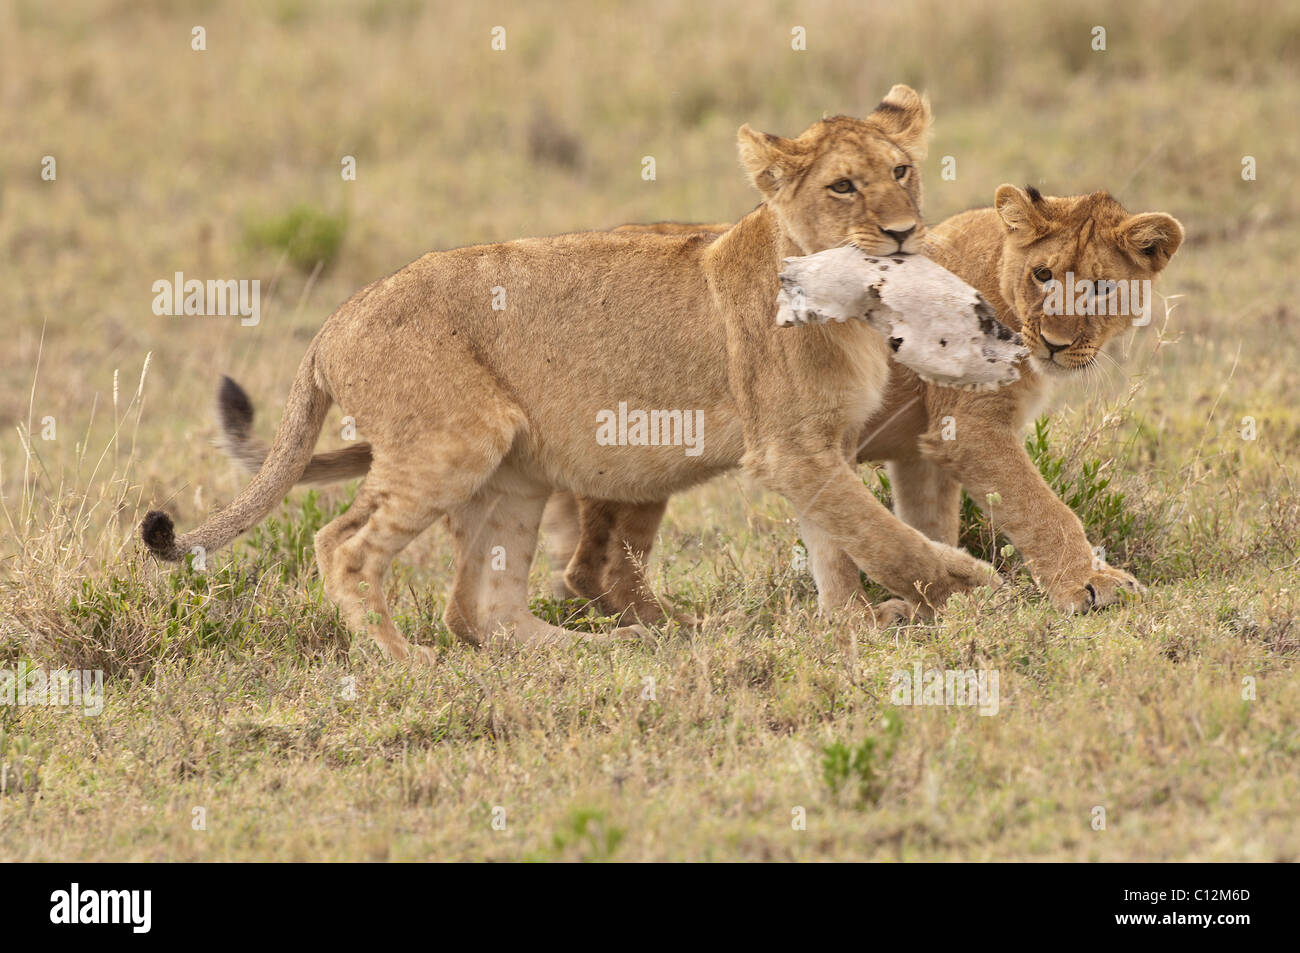 Stock foto de dos jóvenes leones jugando con el cráneo de una cebra. Foto de stock